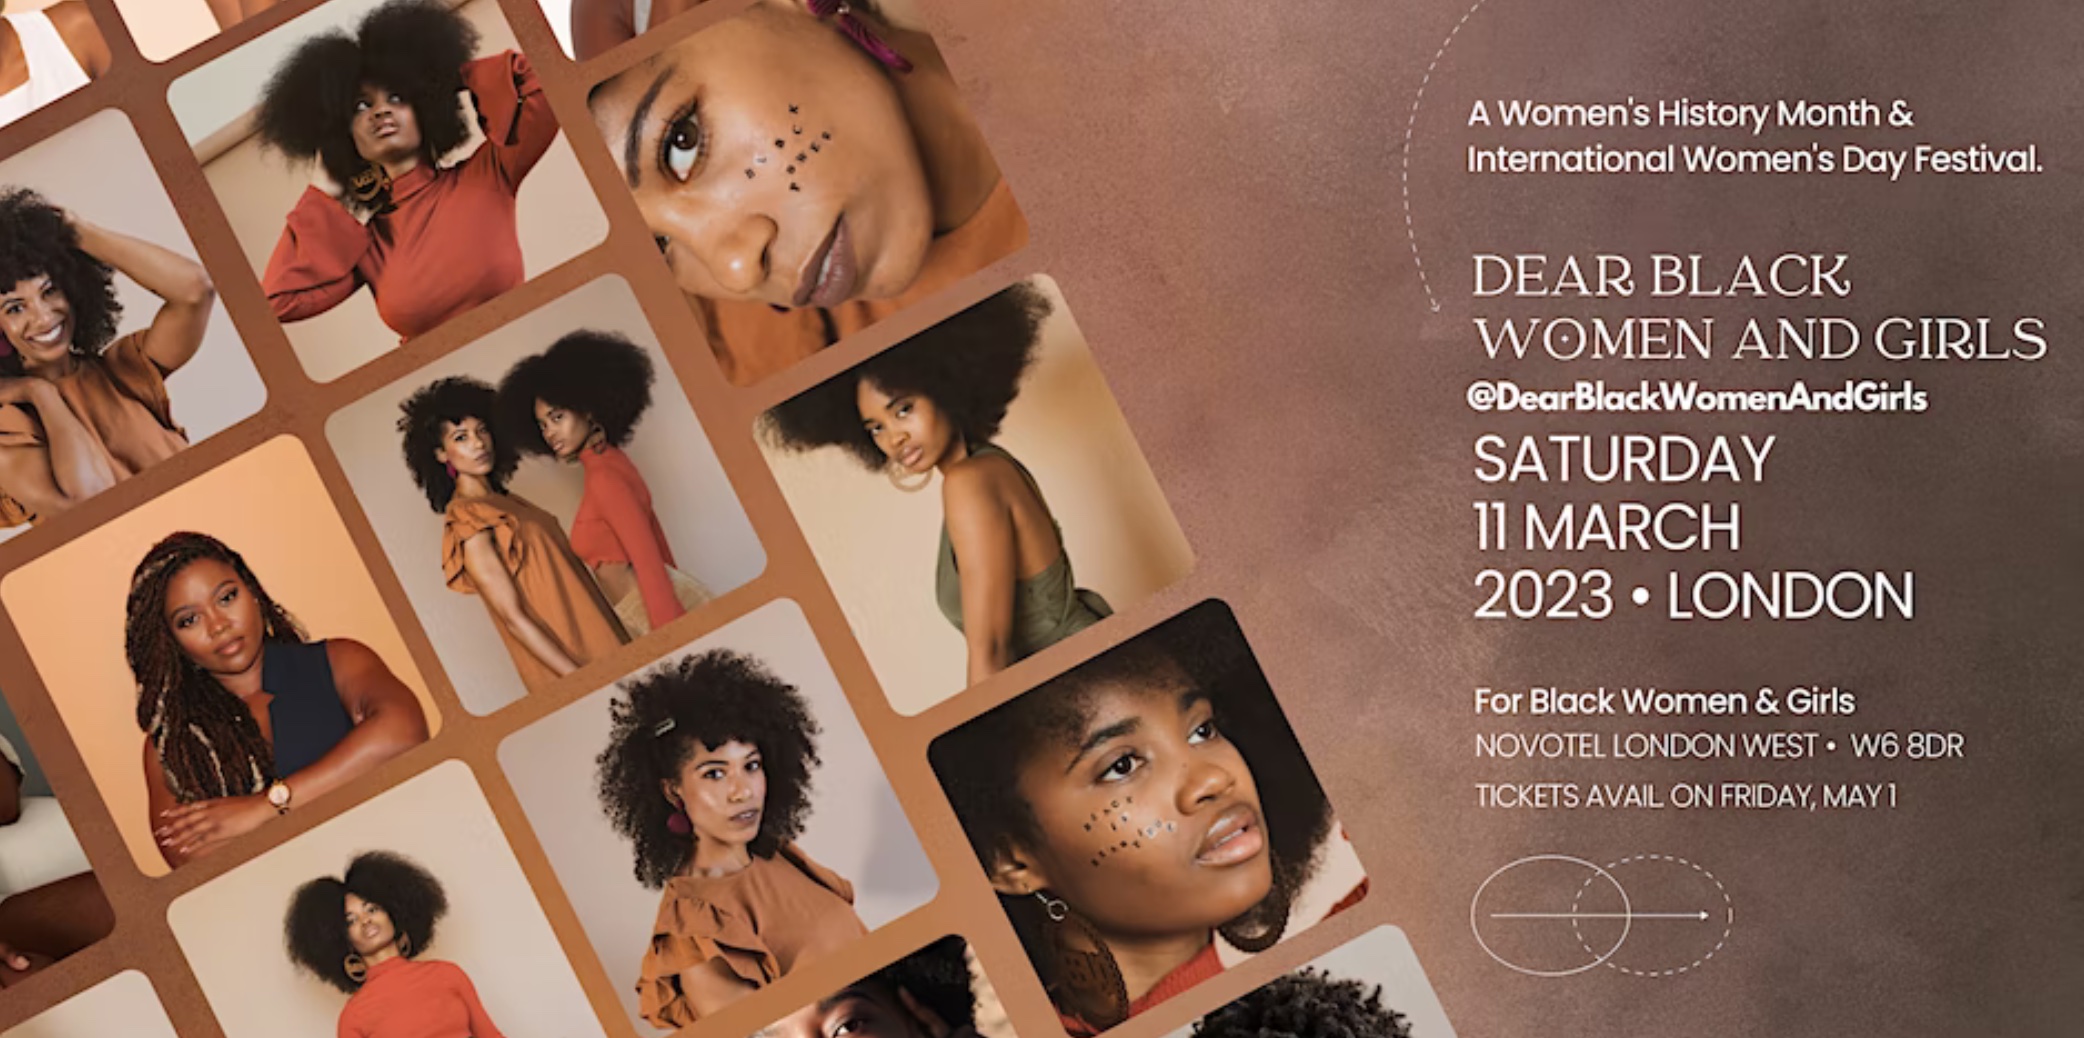 International Women's Day 2023 - Dear Black Women & Girls Festival